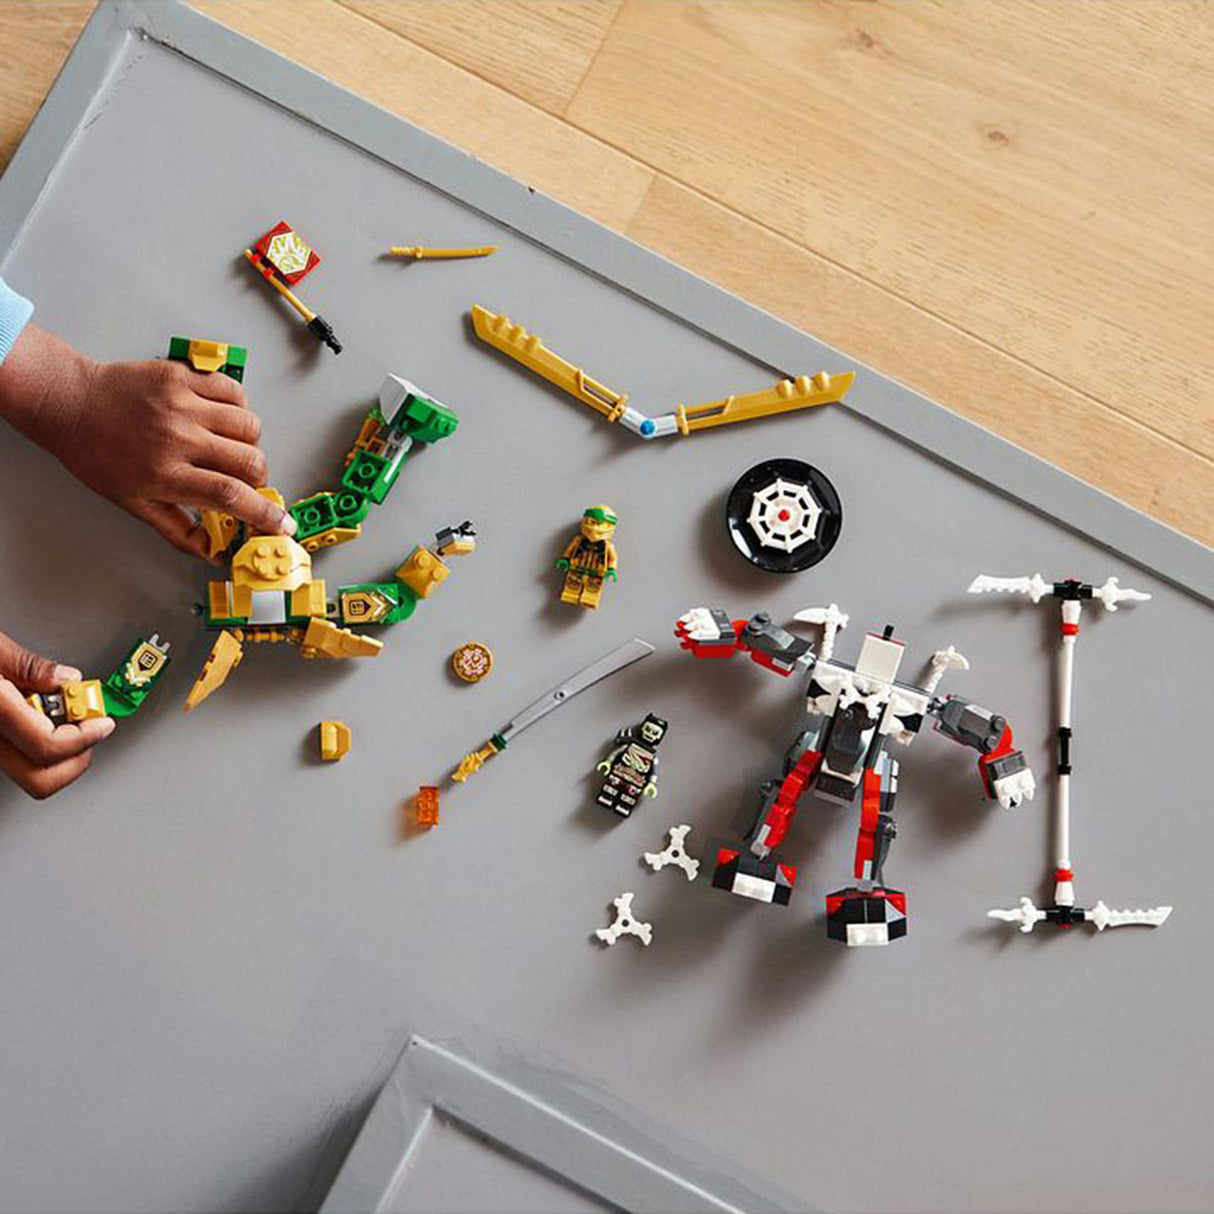 LEGO NINJAGO Lloyd's Mech Battle EVO 71781 (223 pieces)